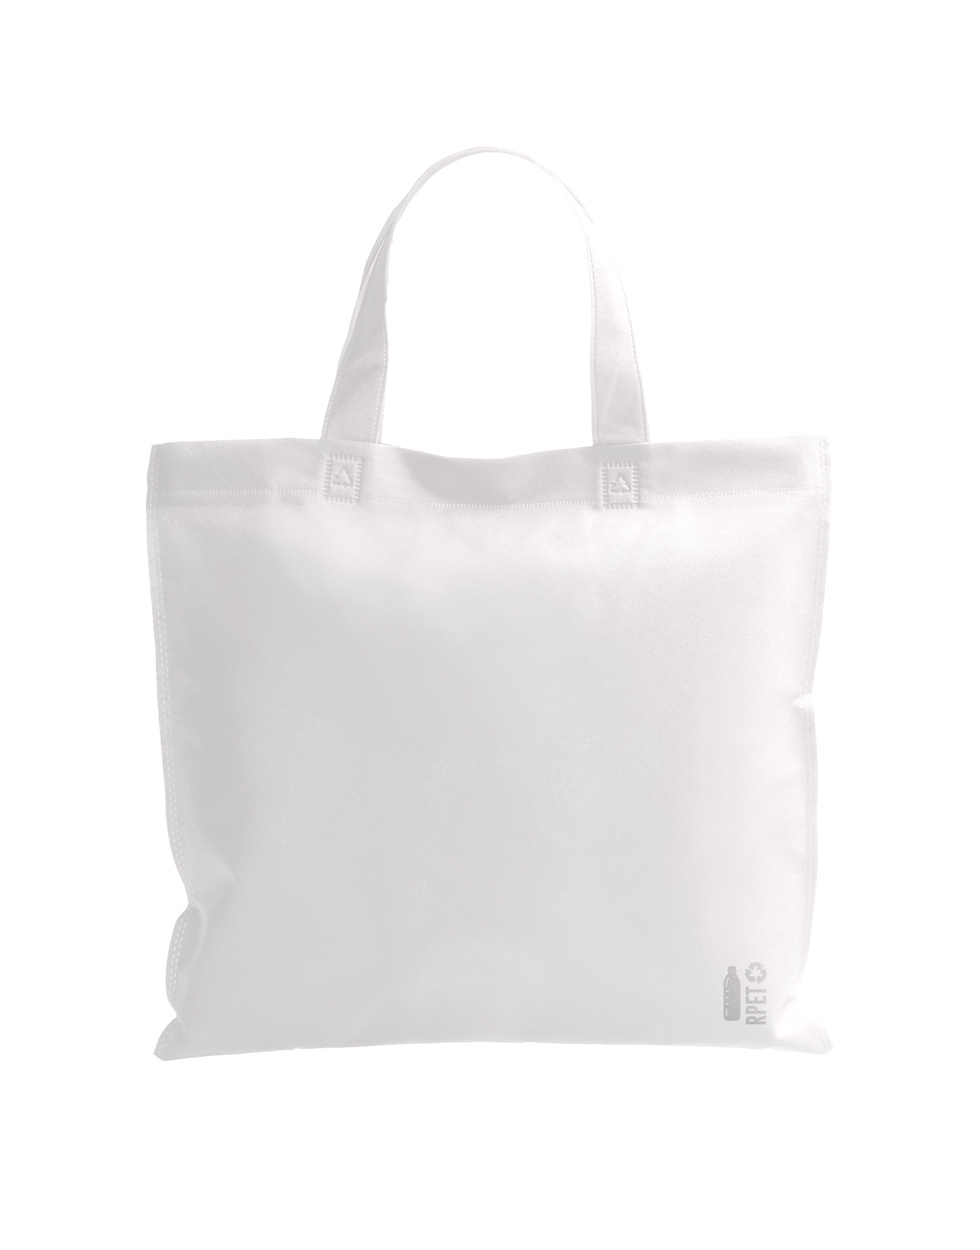 Raduin RPET shopping bag - white